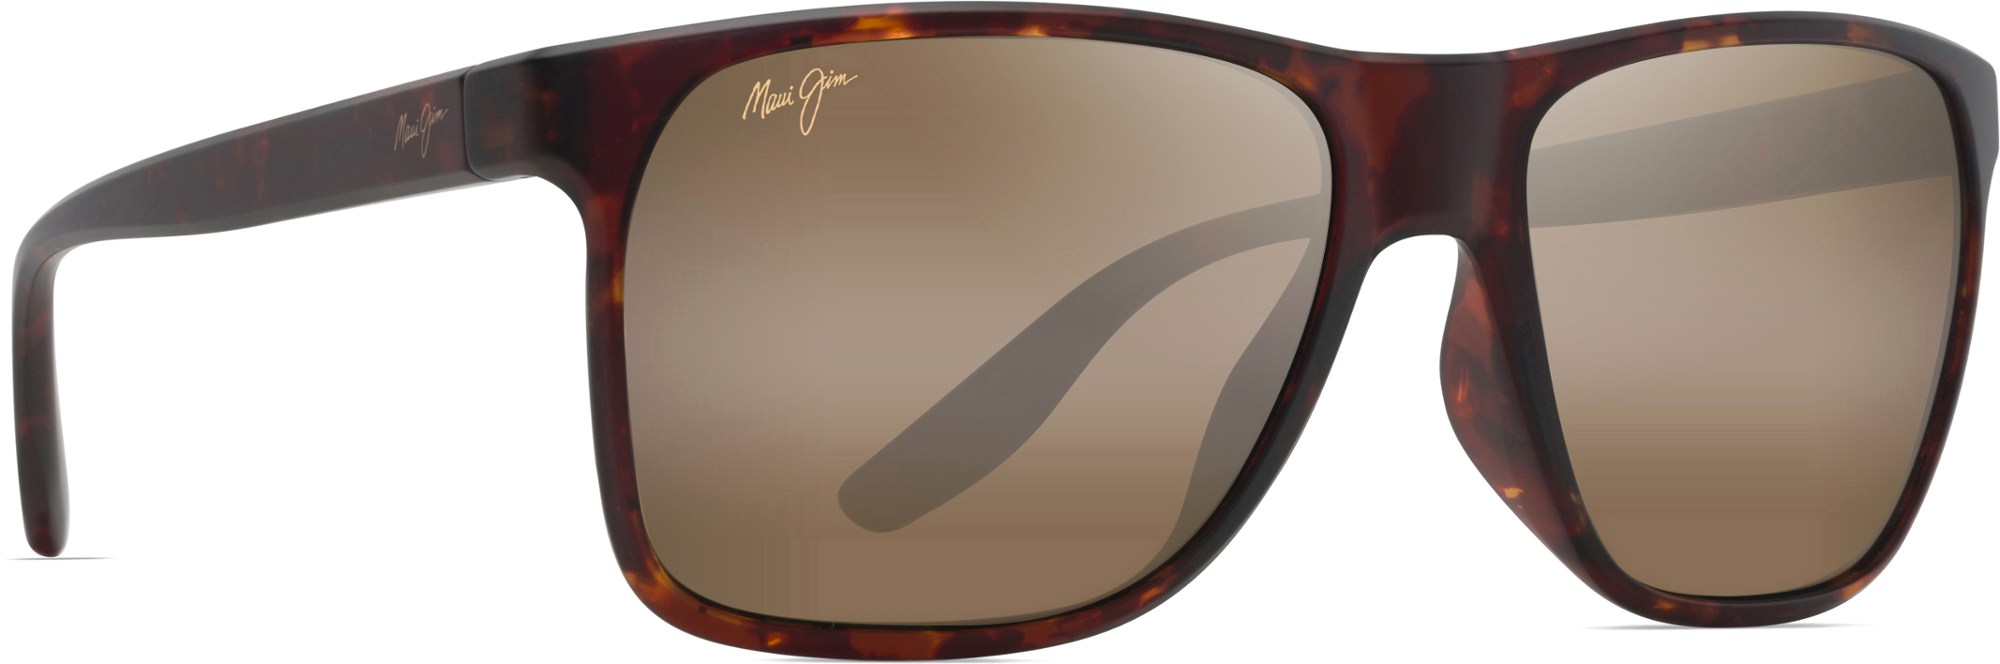 Поляризованные солнцезащитные очки Pailolo Maui Jim, коричневый